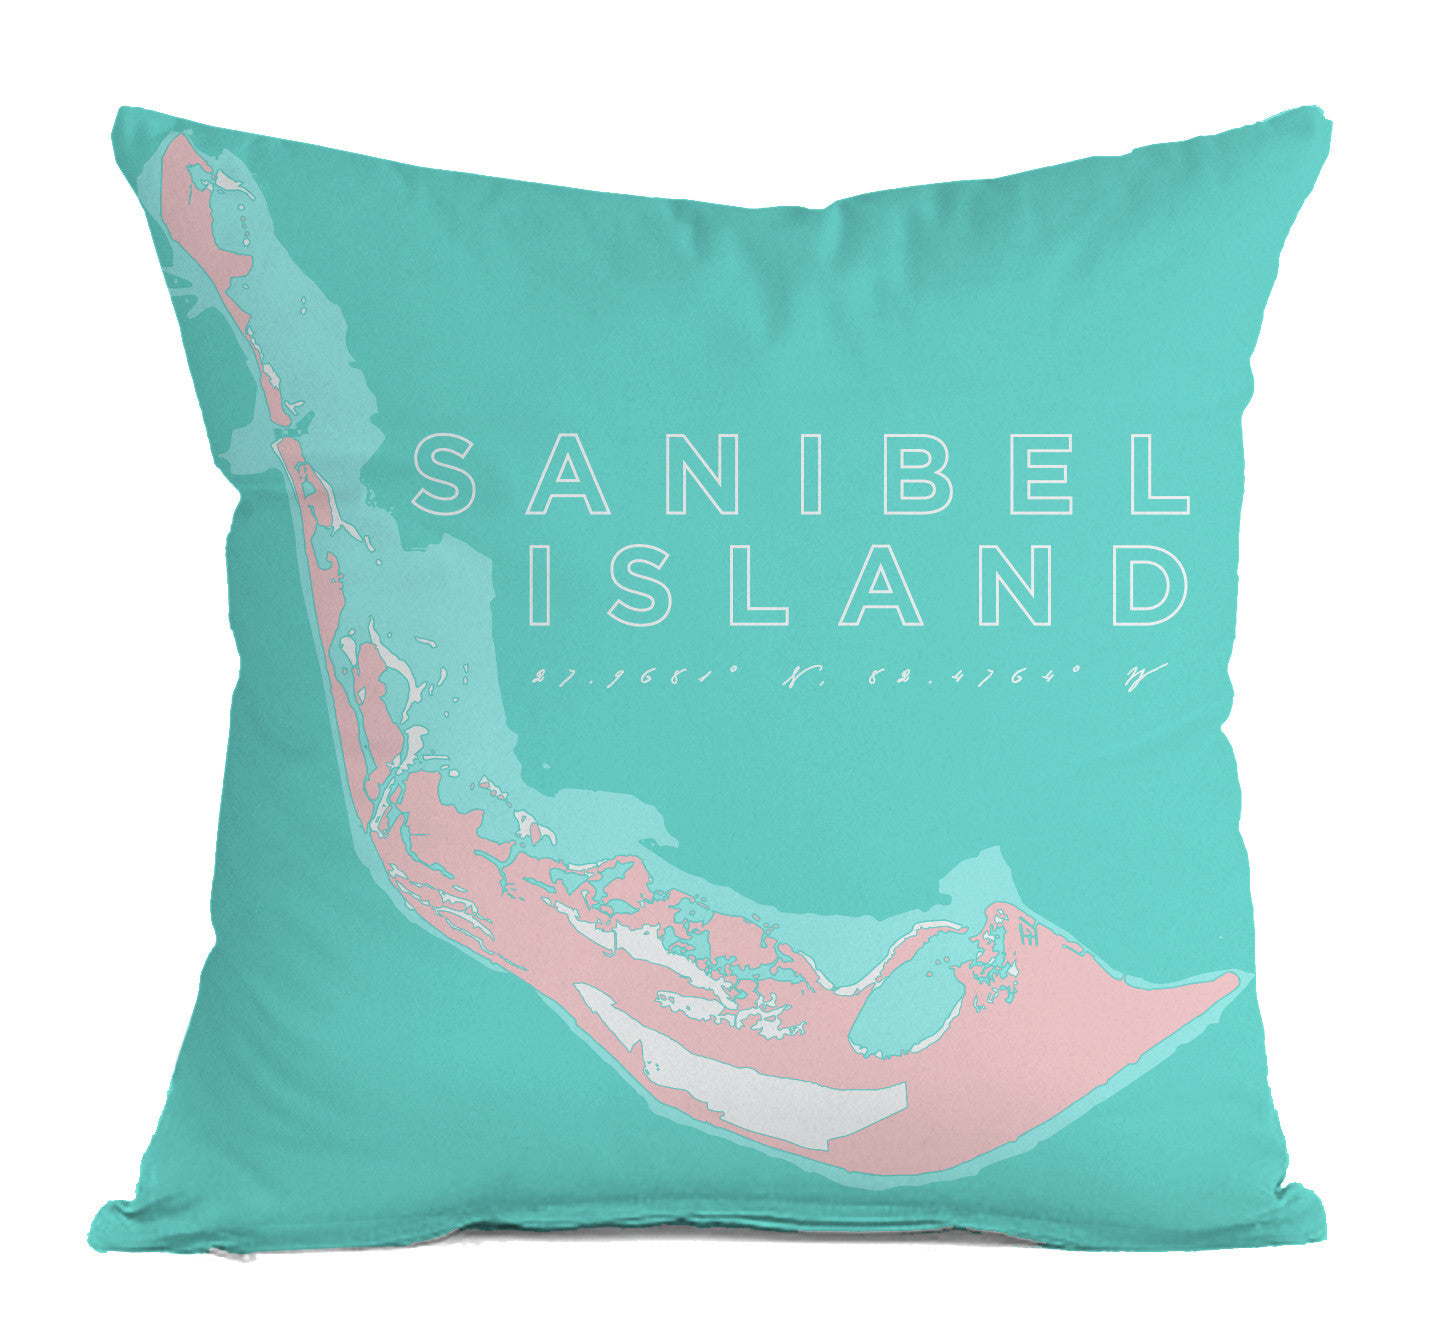 Sanibel Island Indoor/Outdoor Decorative Throw Pillow, Pink & Aqua